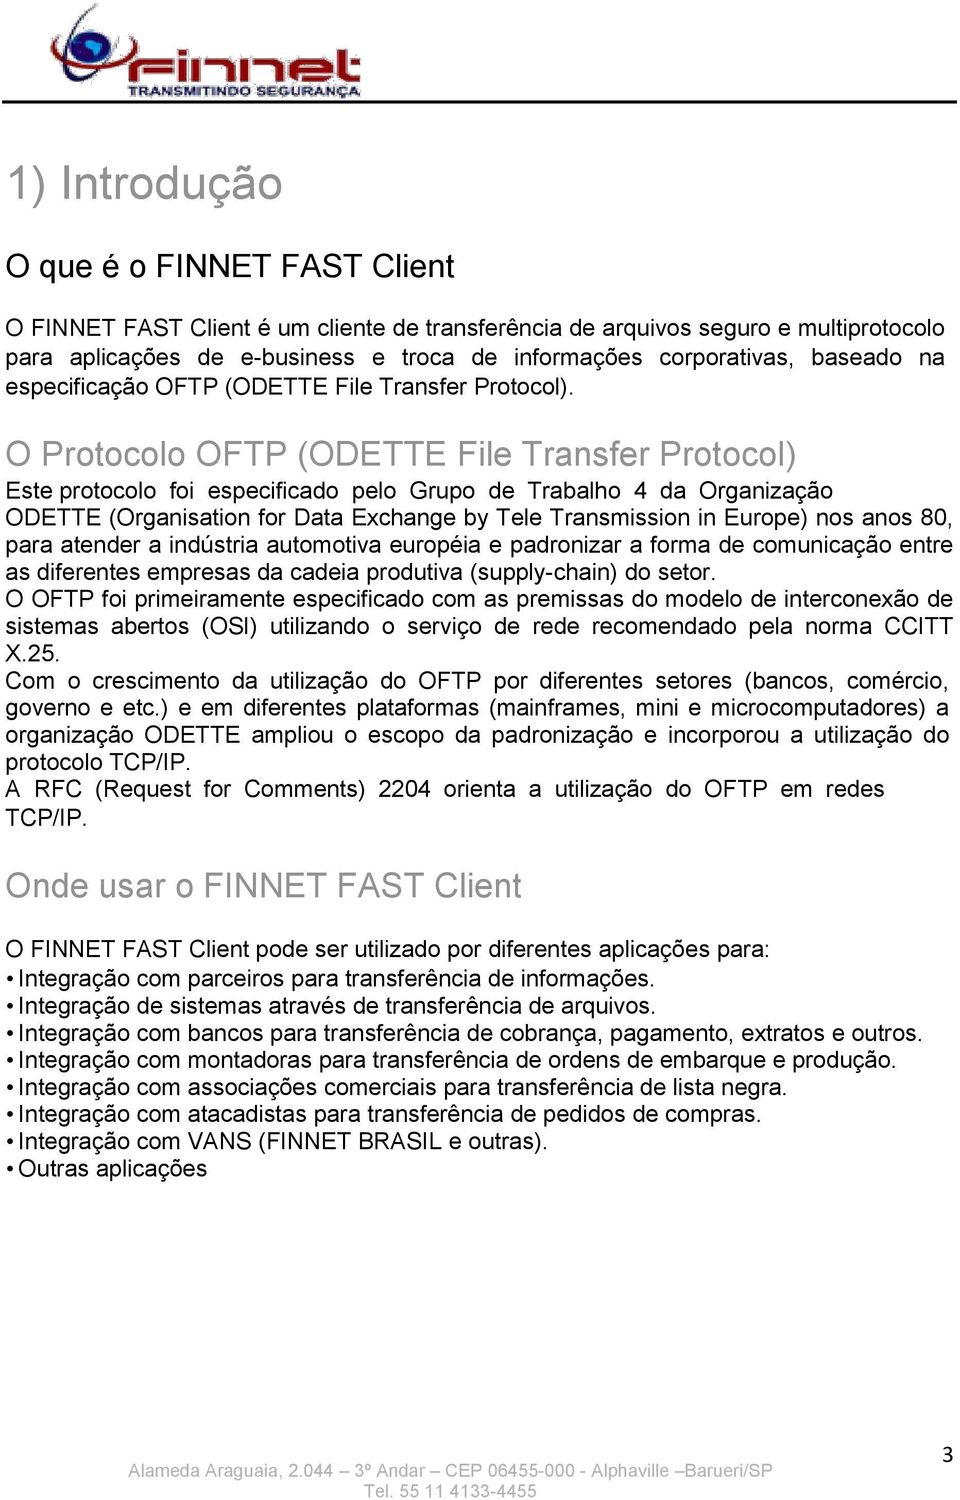 O Protocolo OFTP (ODETTE File Transfer Protocol) Este protocolo foi especificado pelo Grupo de Trabalho 4 da Organização ODETTE (Organisation for Data Exchange by Tele Transmission in Europe) nos